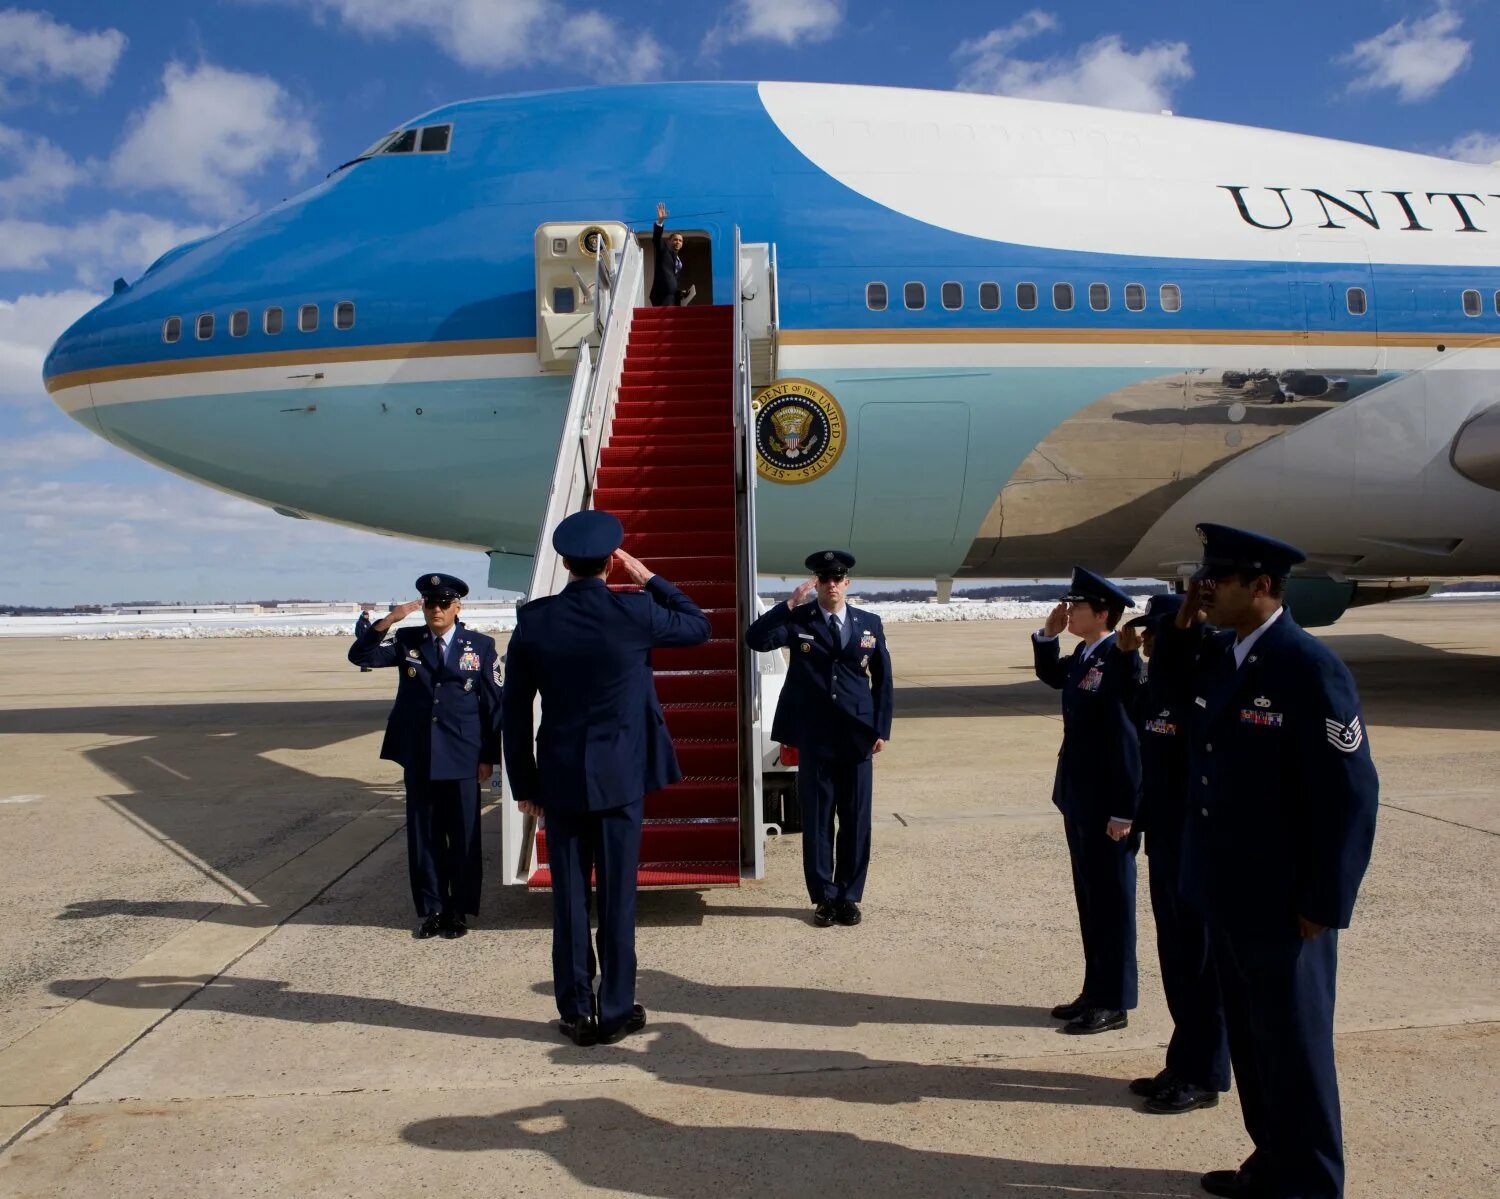 Борт номер 1 США. Самолет президента США. Air Force one самолет. Борт номер 1 президента США.